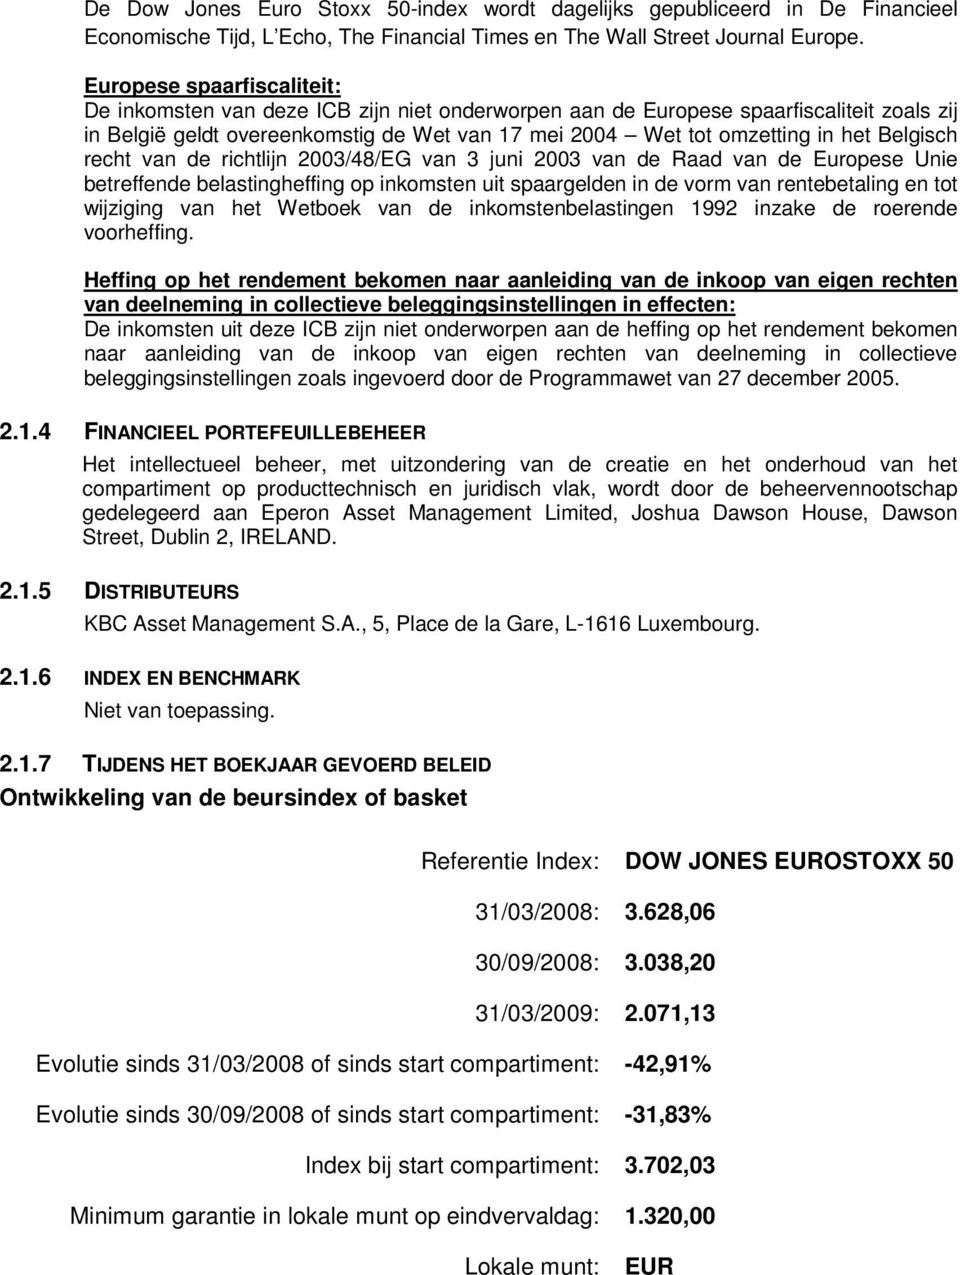 Belgisch recht van de richtlijn 2003/48/EG van 3 juni 2003 van de Raad van de Europese Unie betreffende belastingheffing op inkomsten uit spaargelden in de vorm van rentebetaling en tot wijziging van